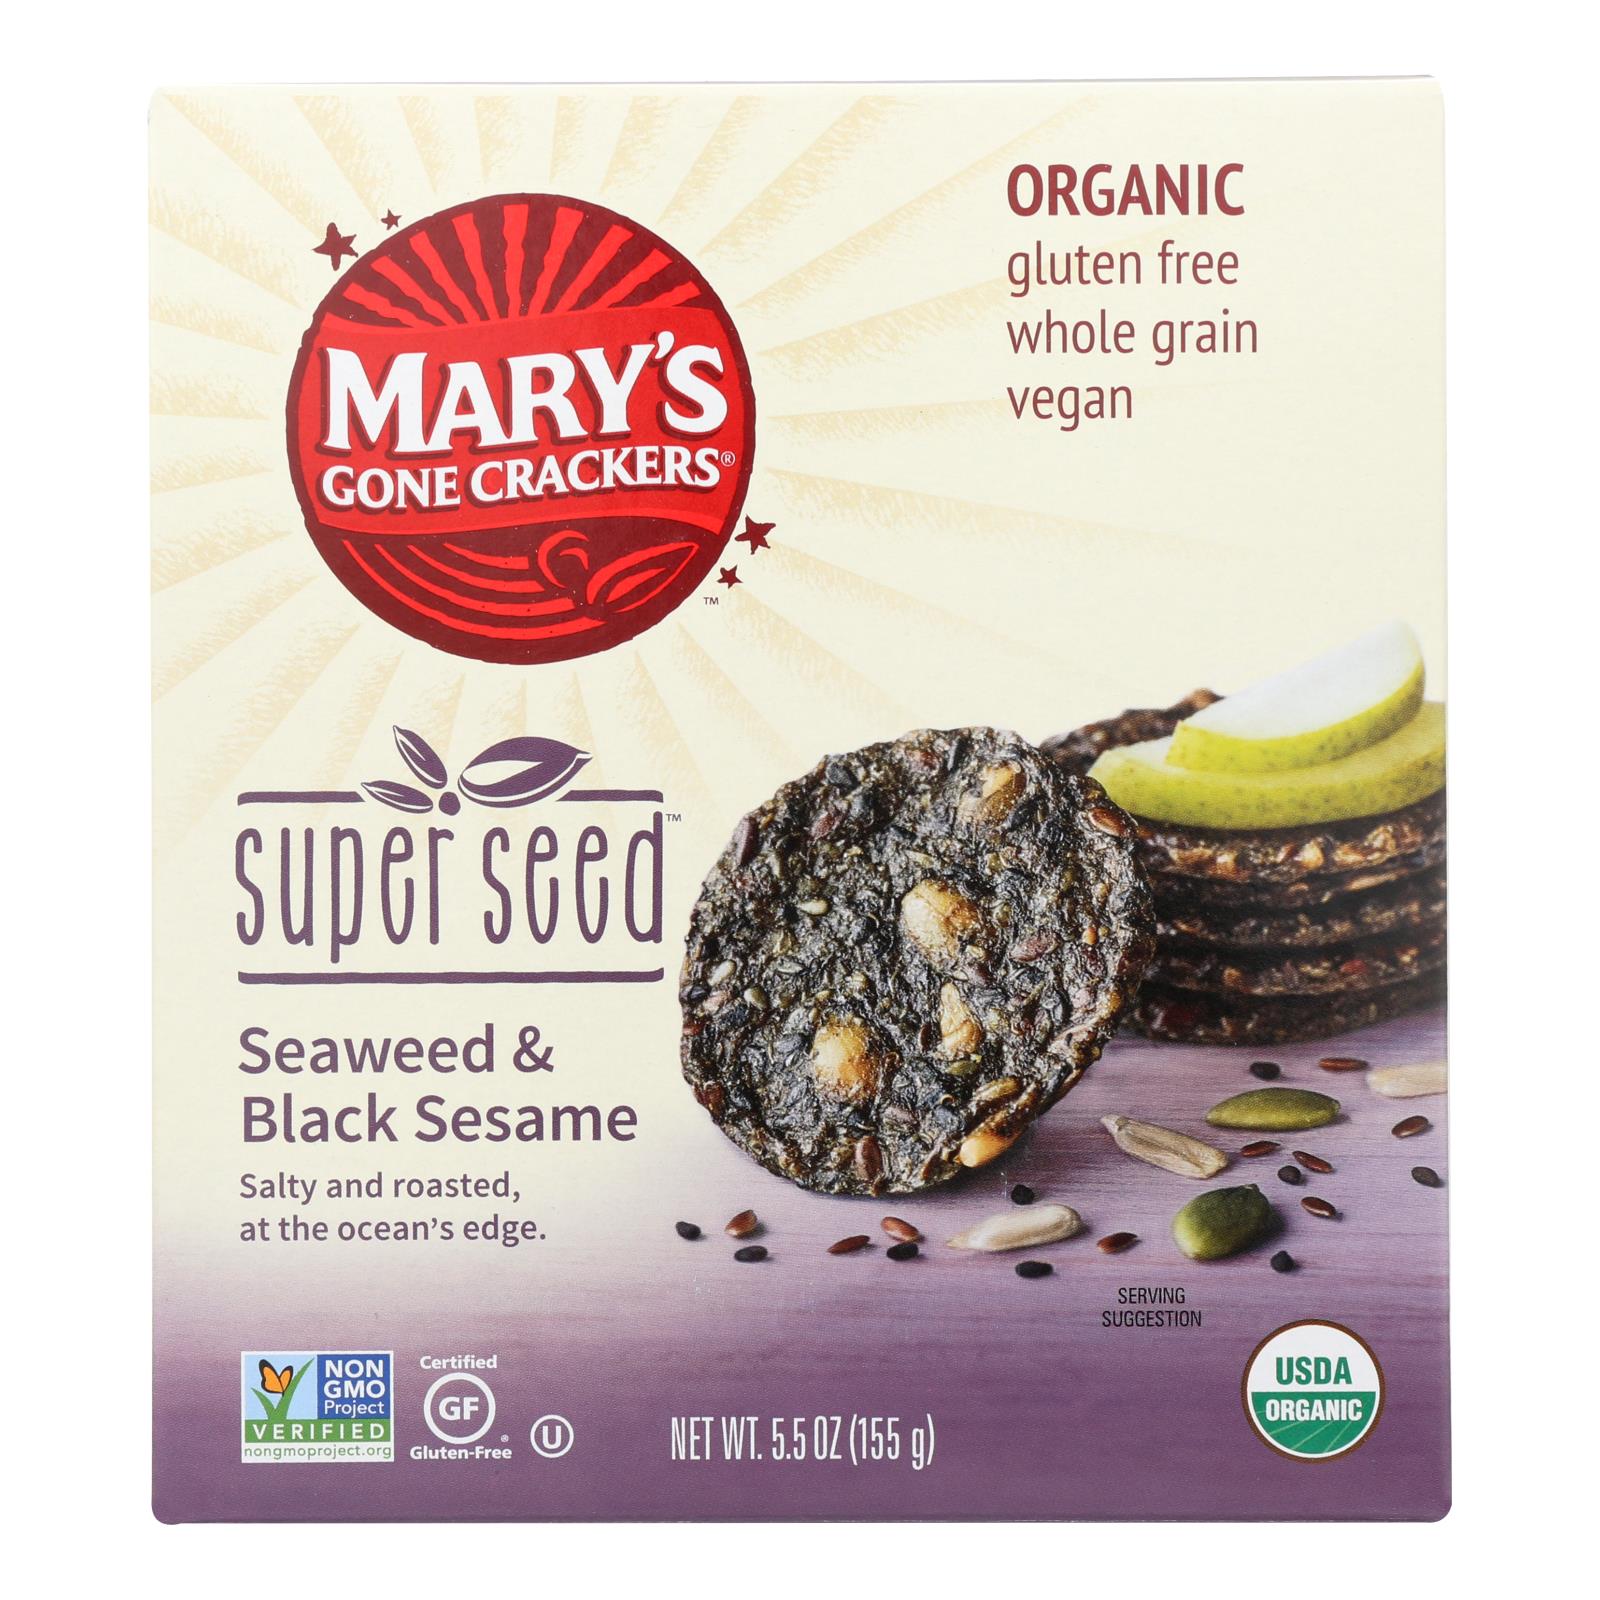 Craquelins de Mary's Gone, Mary's Gone Crackers Super Seed - Algues et graine noire - Caisse de 6 - 5.5 oz (paquet de 6)